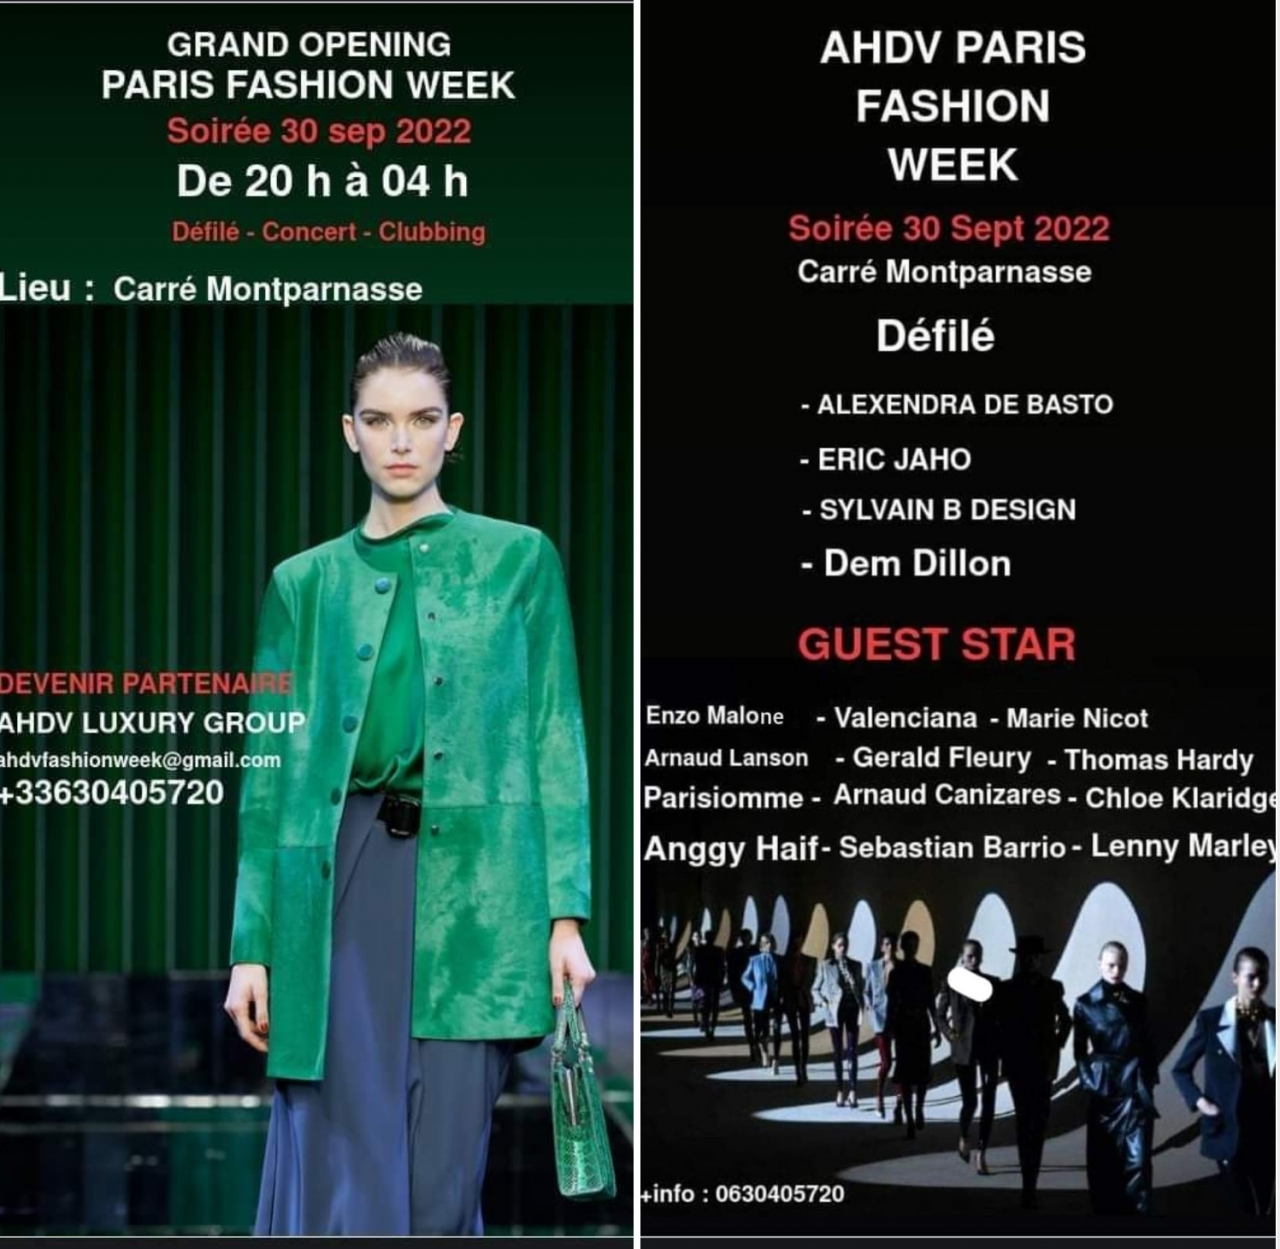 Paris Fashion Week 2022